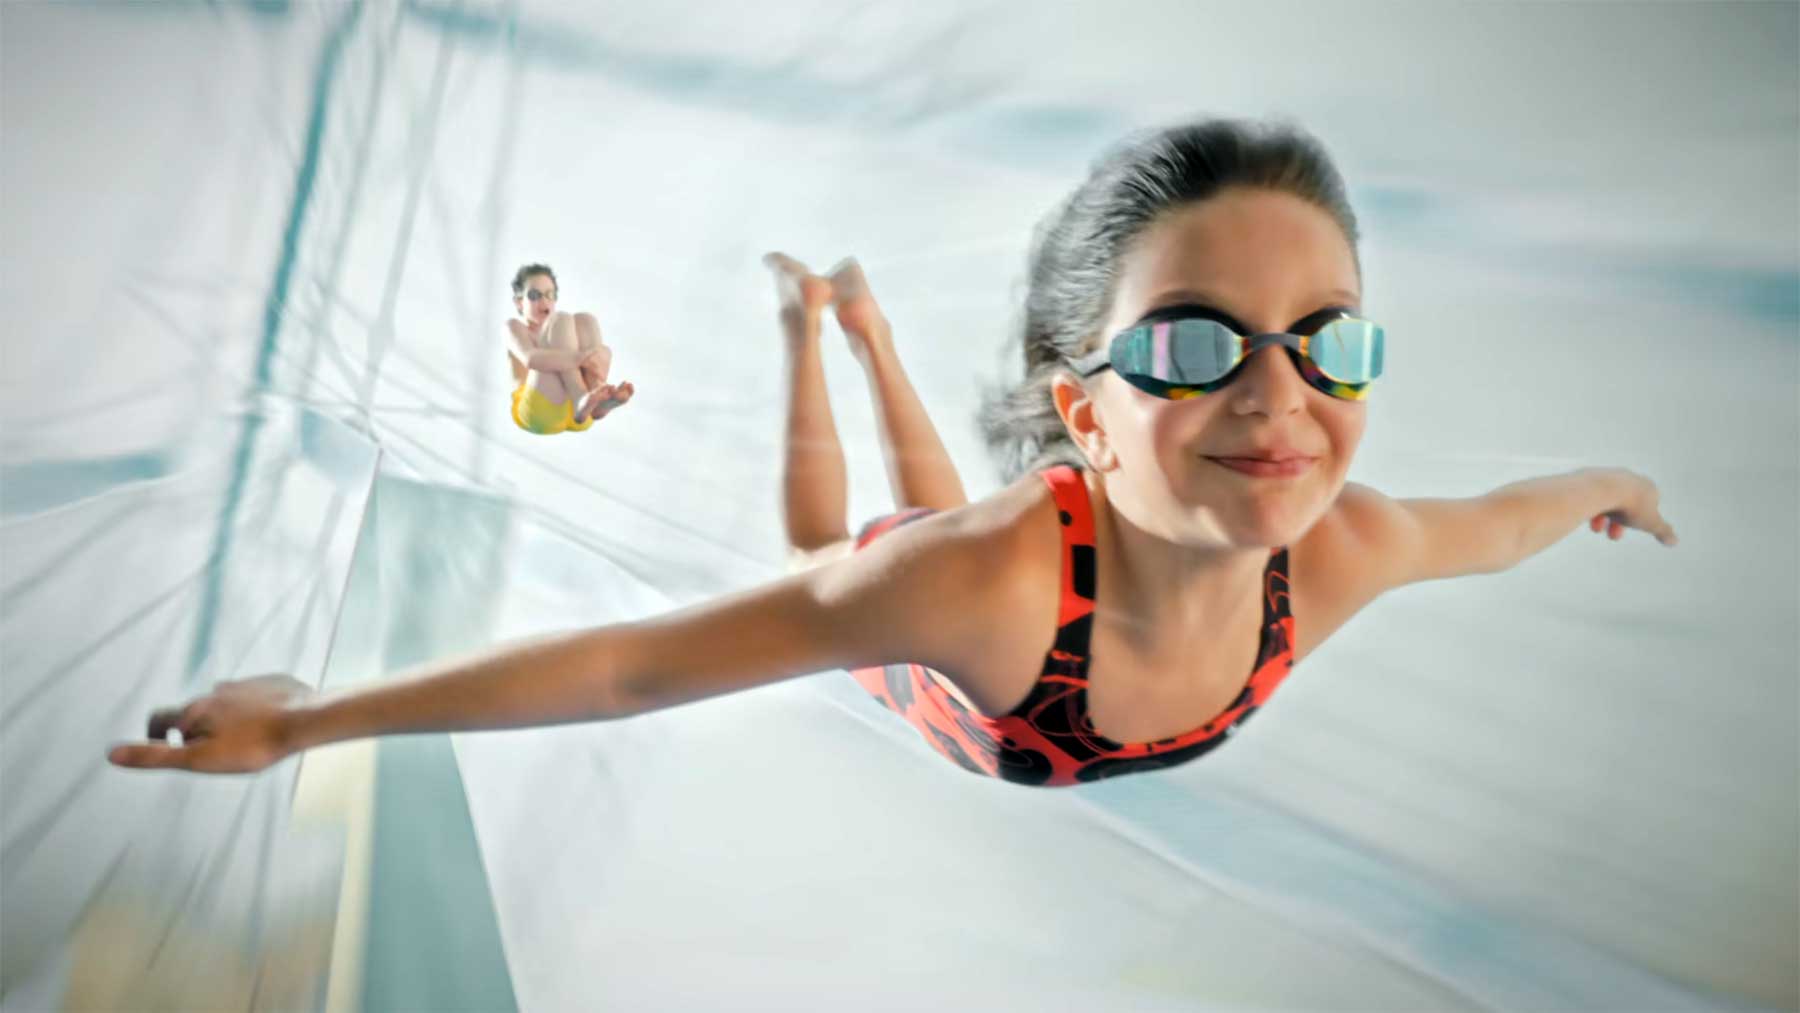 Cooler Nike-Werbespot: "Rise of the Kids" nike-spot-rise-of-the-kids 